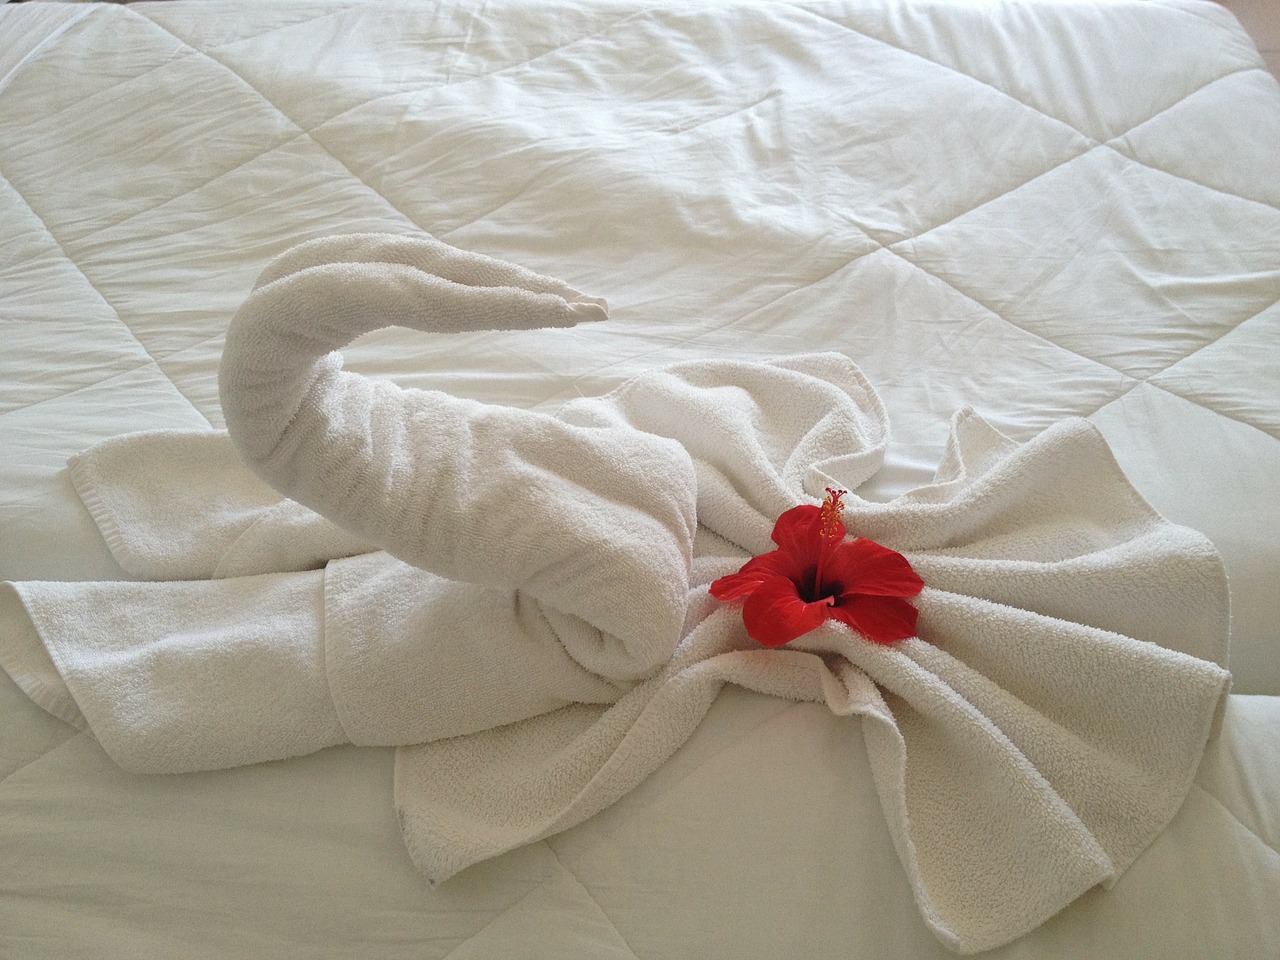 Pliage de serviette à la Marie Kondo en 4 idées + vidéo